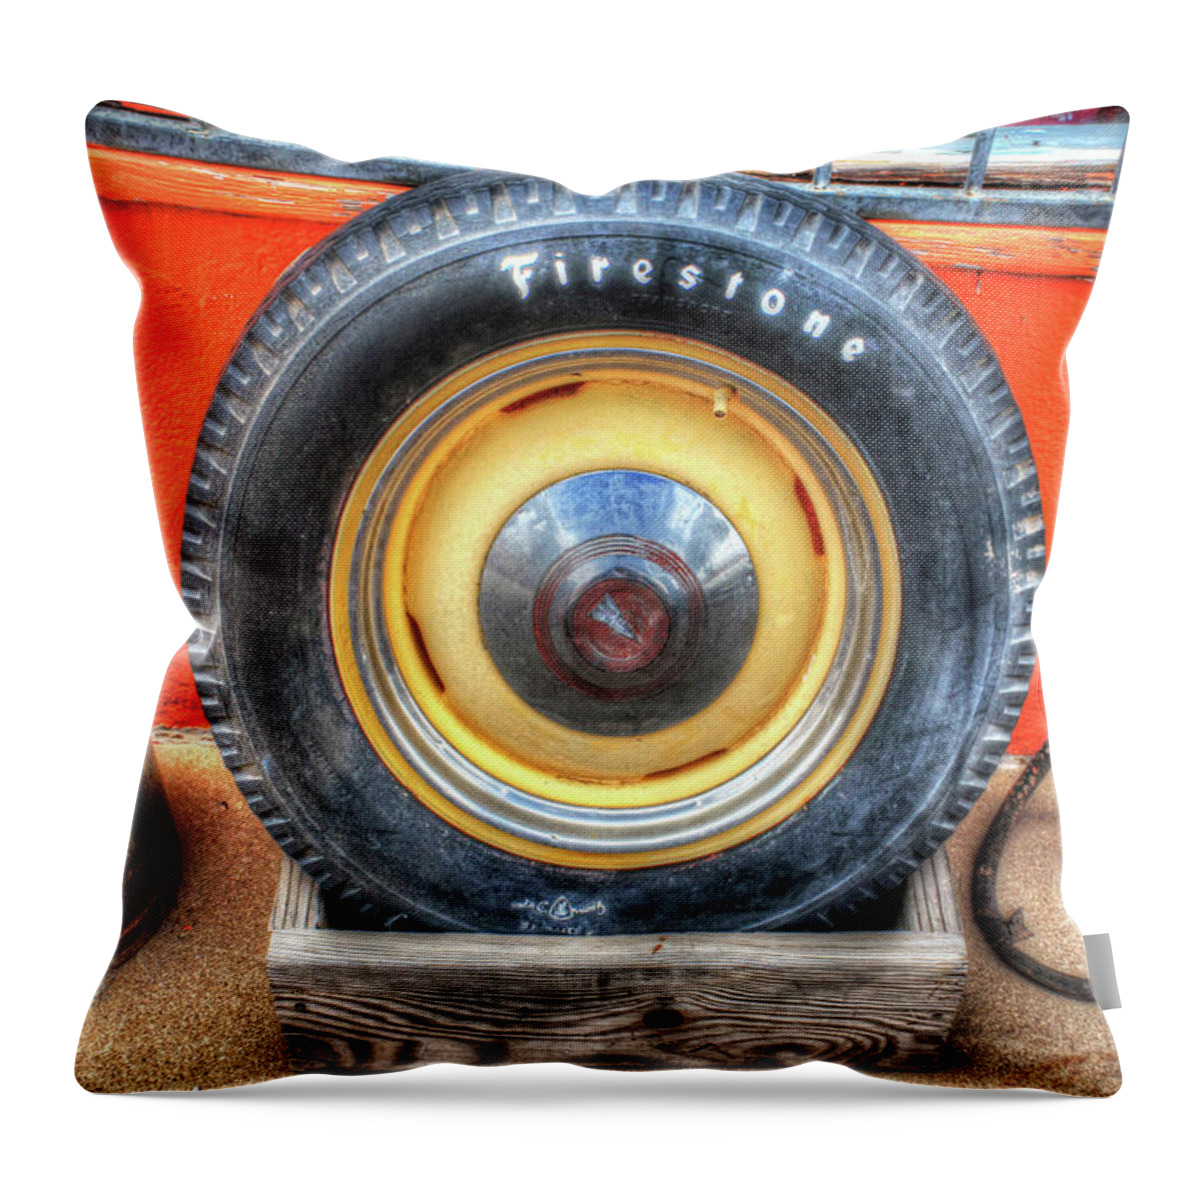 Fine Art Throw Pillow featuring the photograph Firestone by Robert Harris